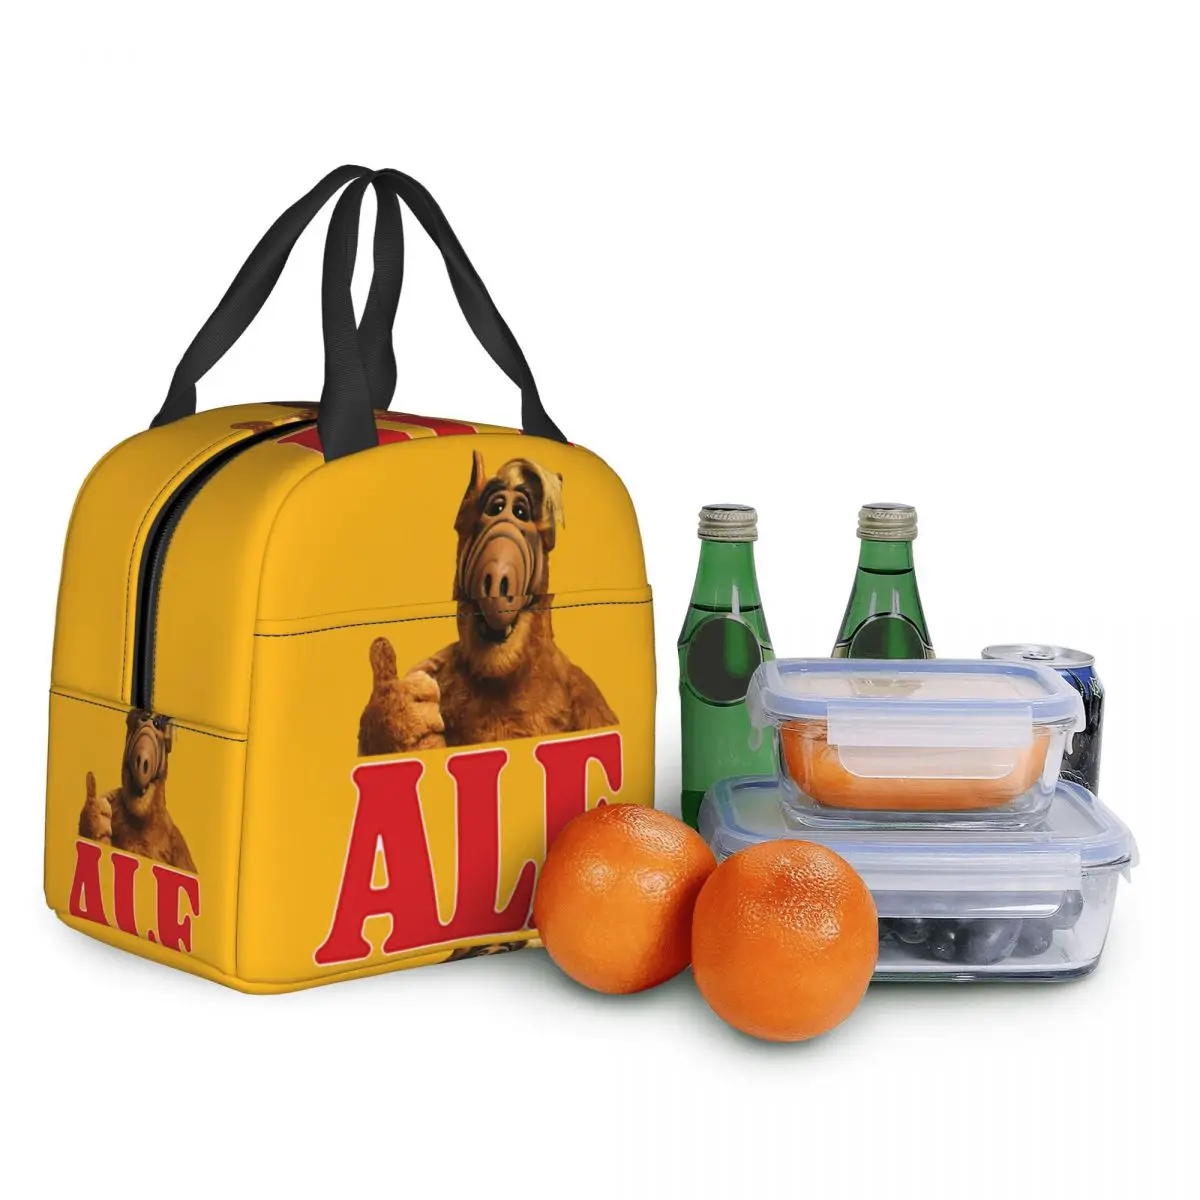 Alf Thumbs Up Lunch Bag Cooler Термоизолированный Ланч-Бокс Инопланетной Формы Жизни для Женщин, Детей, Школьной Работы, Пикника, Еды, Сумки-Тоут Изображение 4